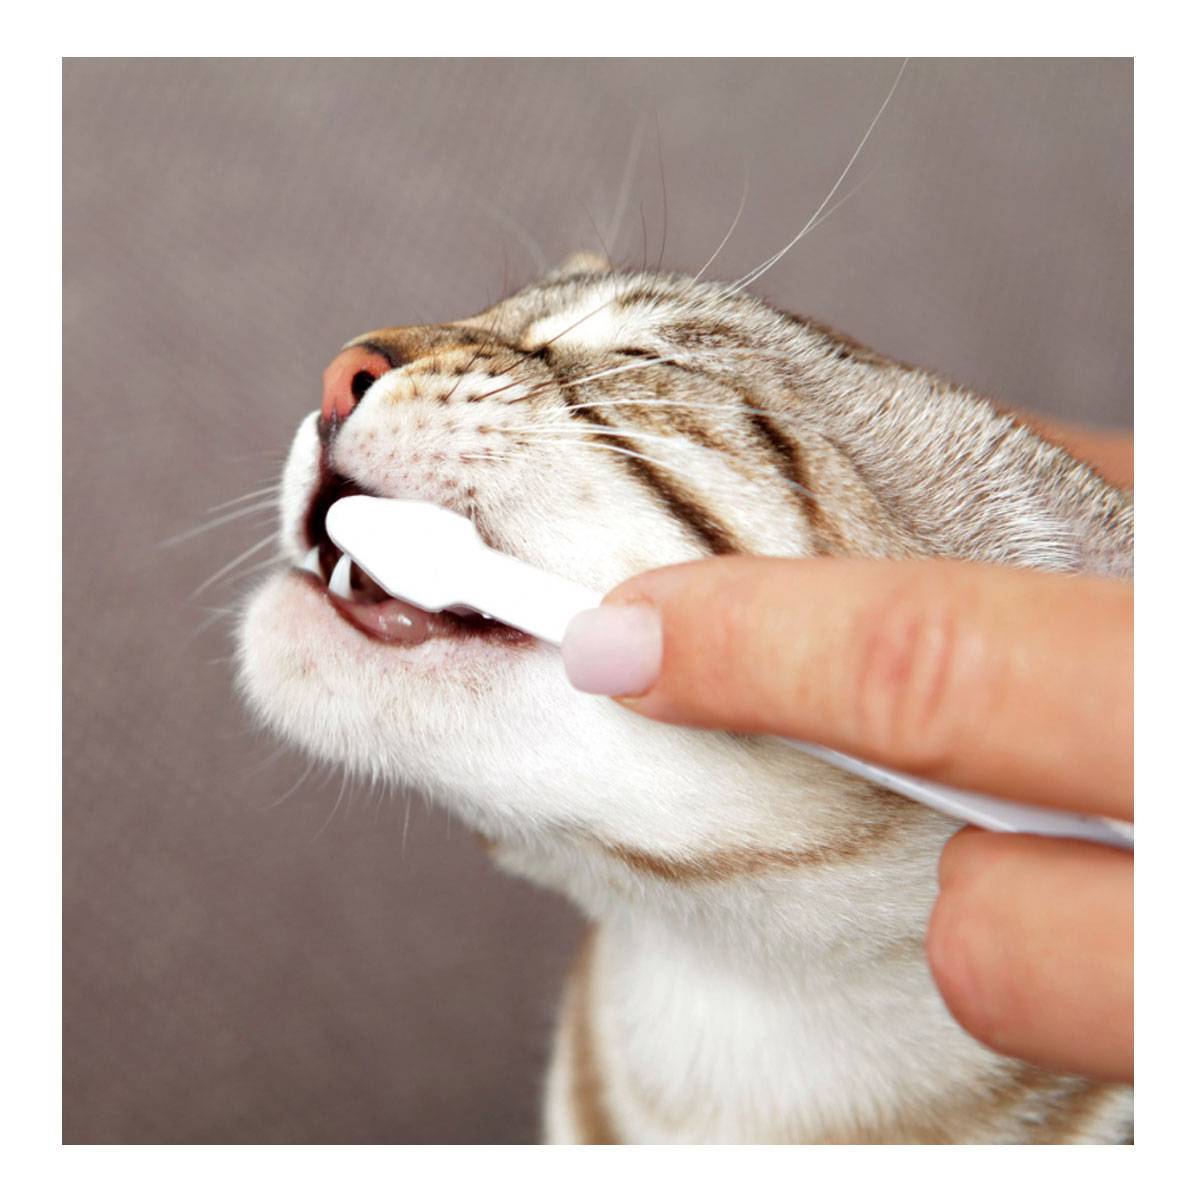 Как ухаживать за зубами кошки: инструкция от фелинолога